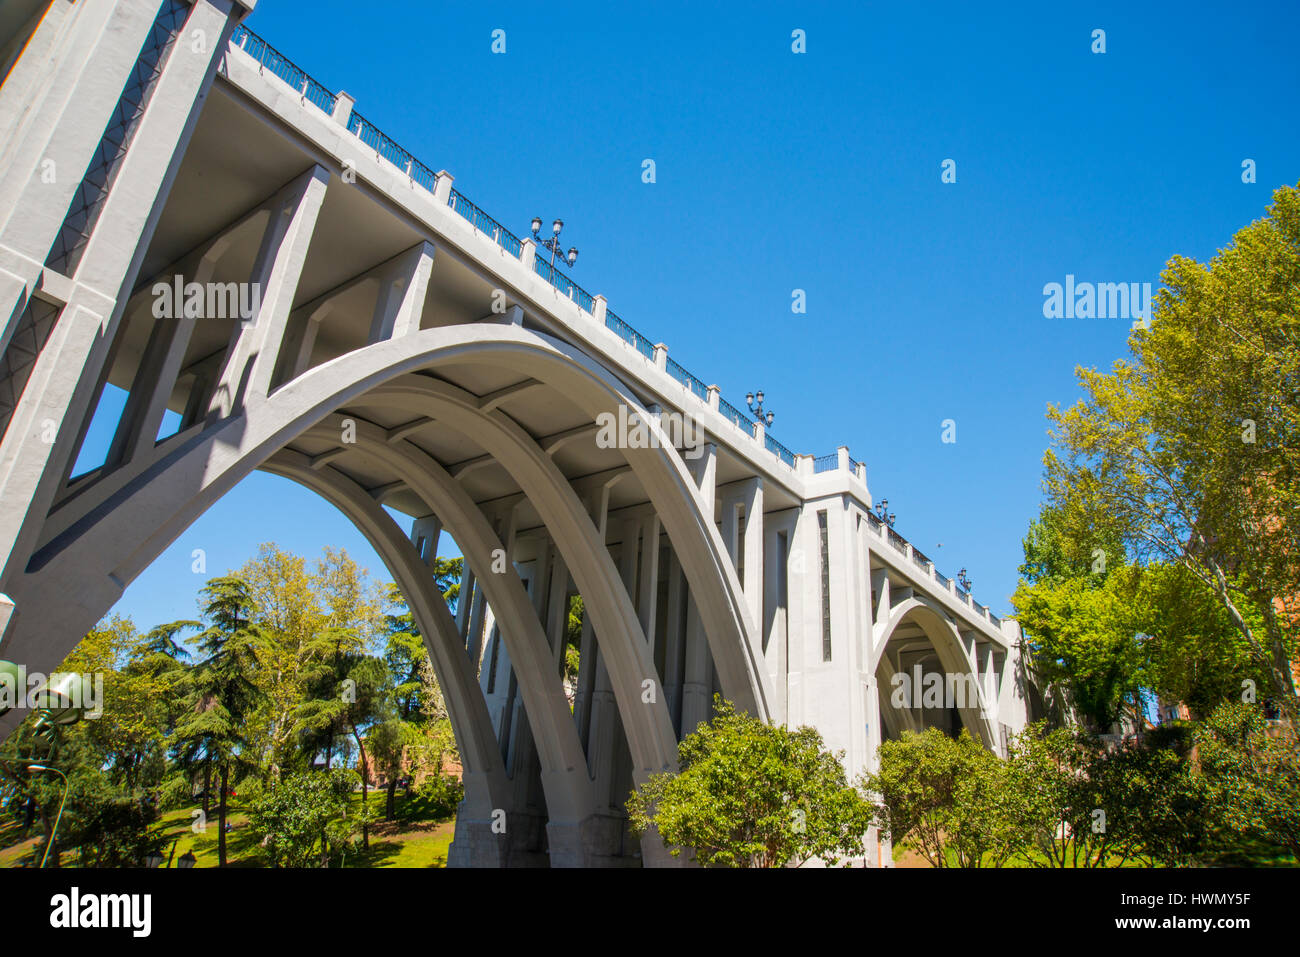 Viaduct. Madrid, Spain. Stock Photo